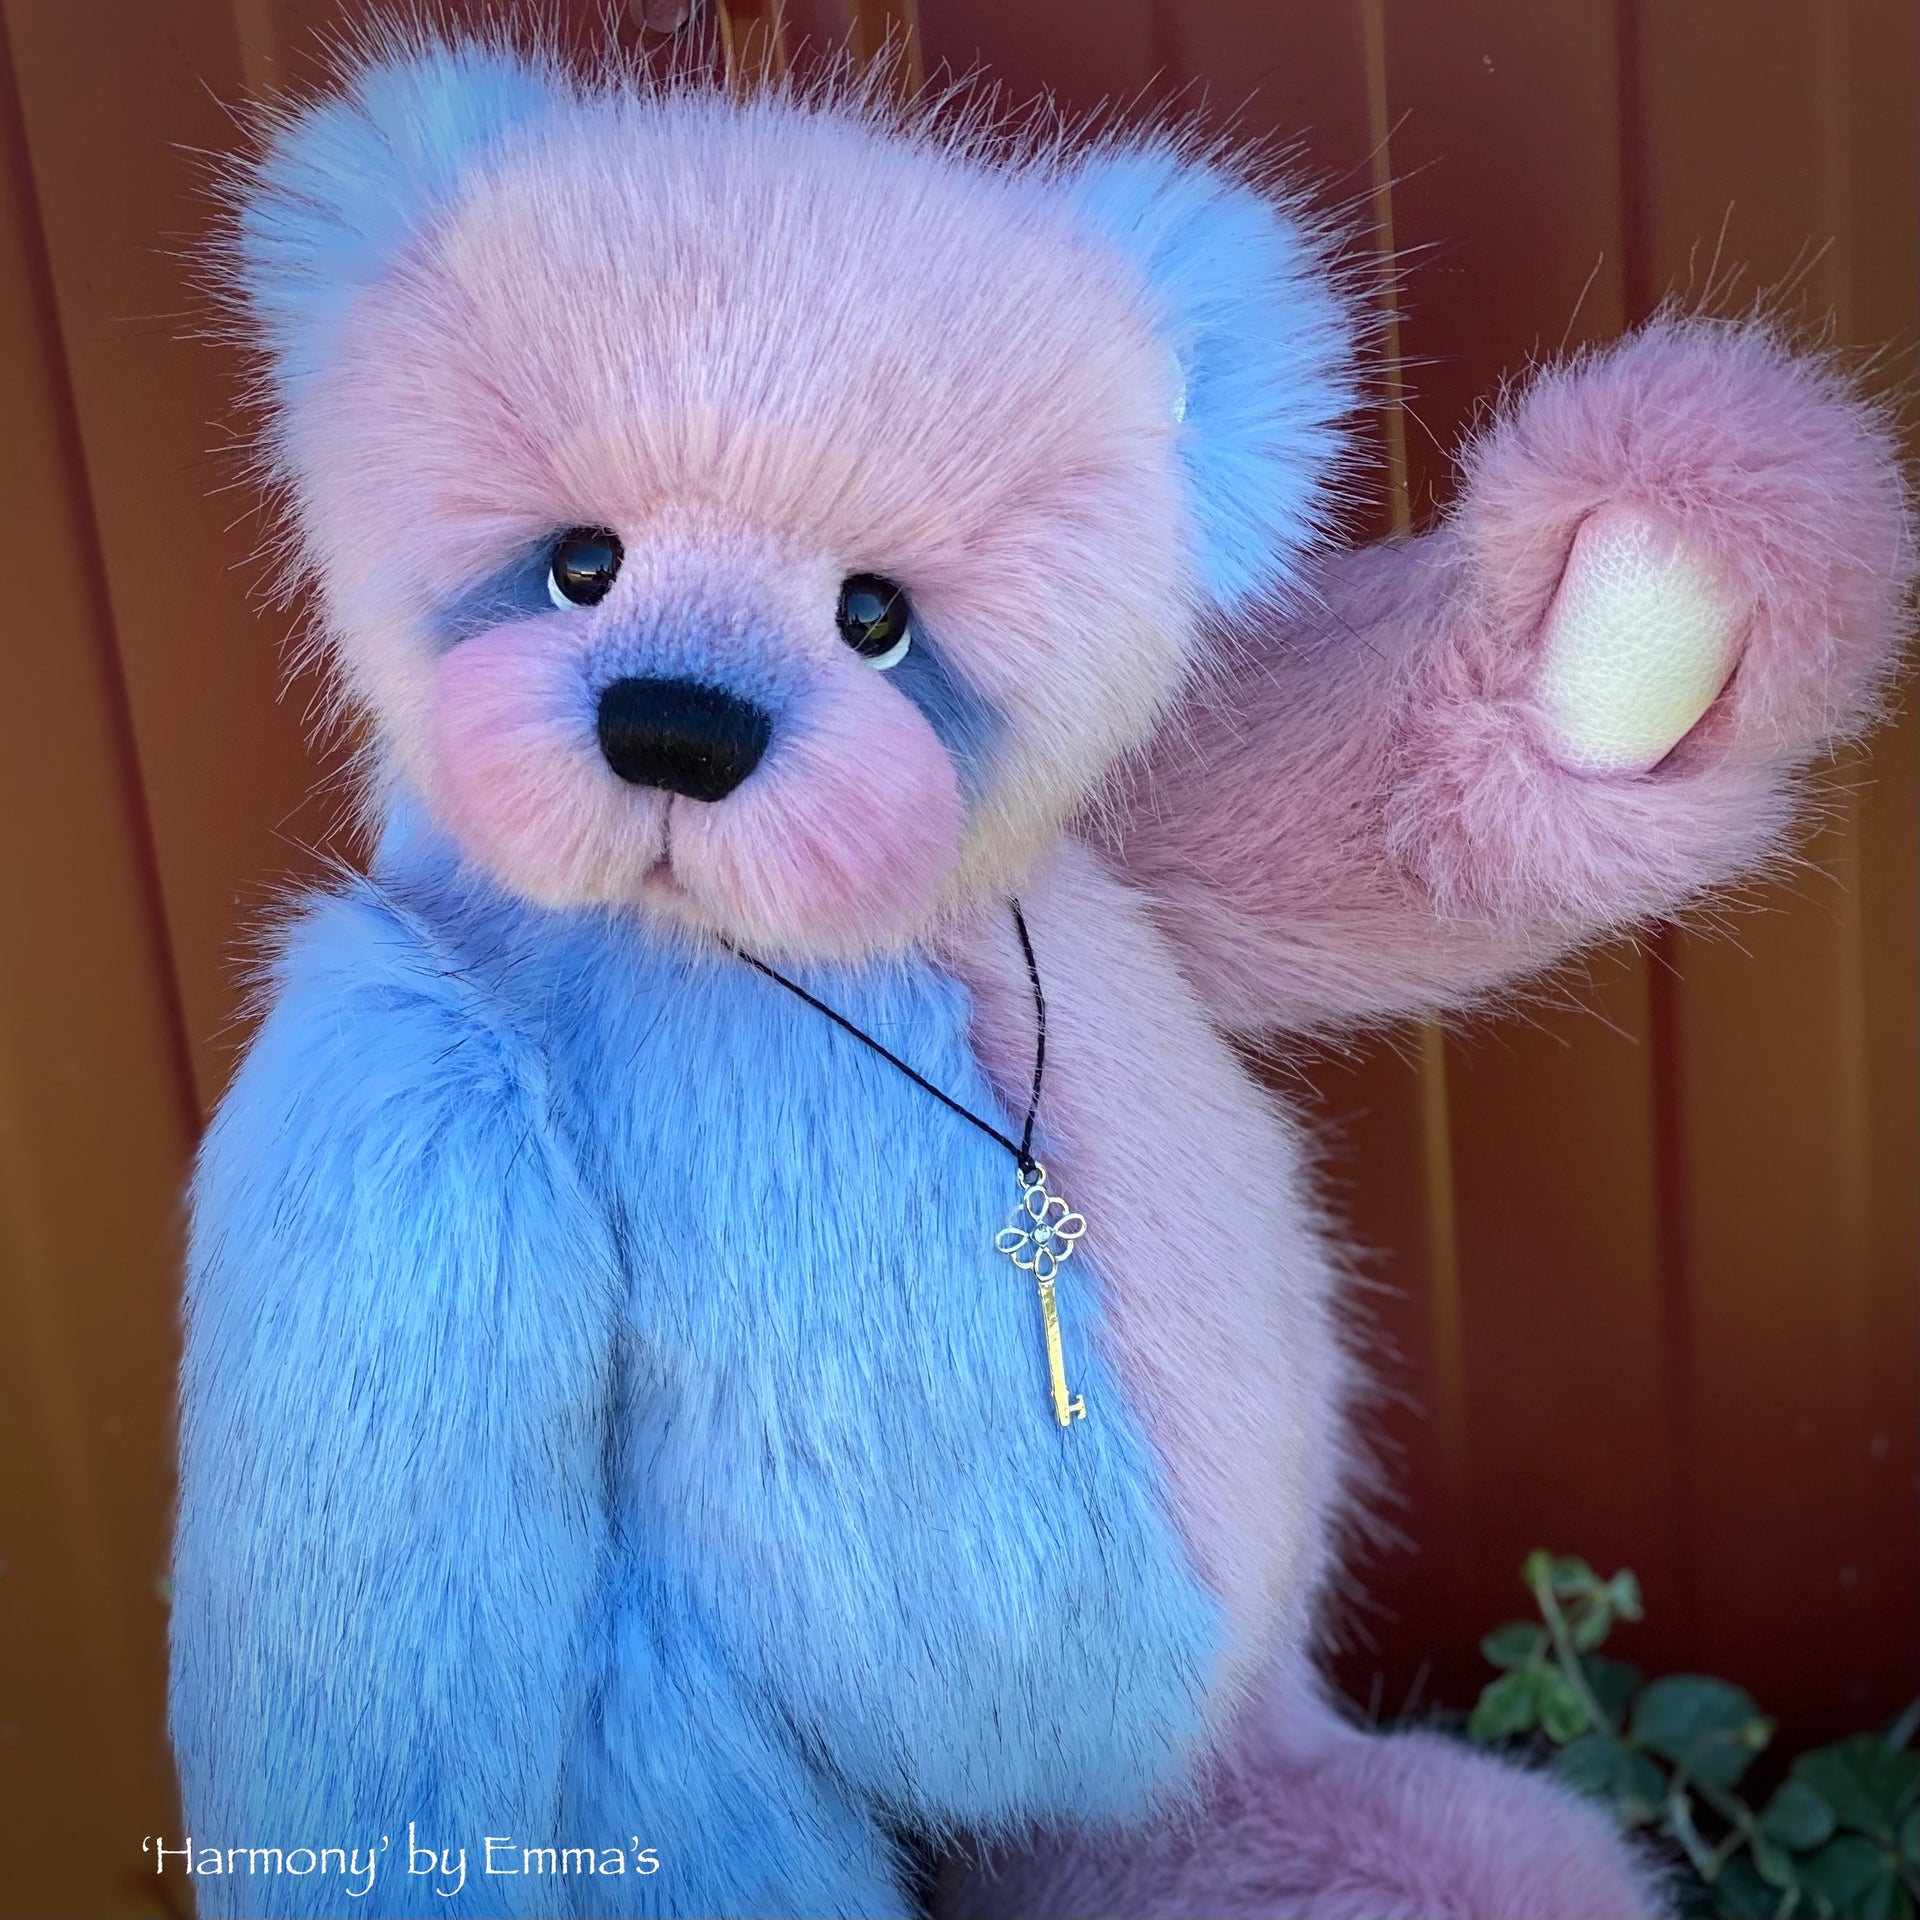 Harmony - 14" Faux Fur artist bear by Emmas Bears - OOAK